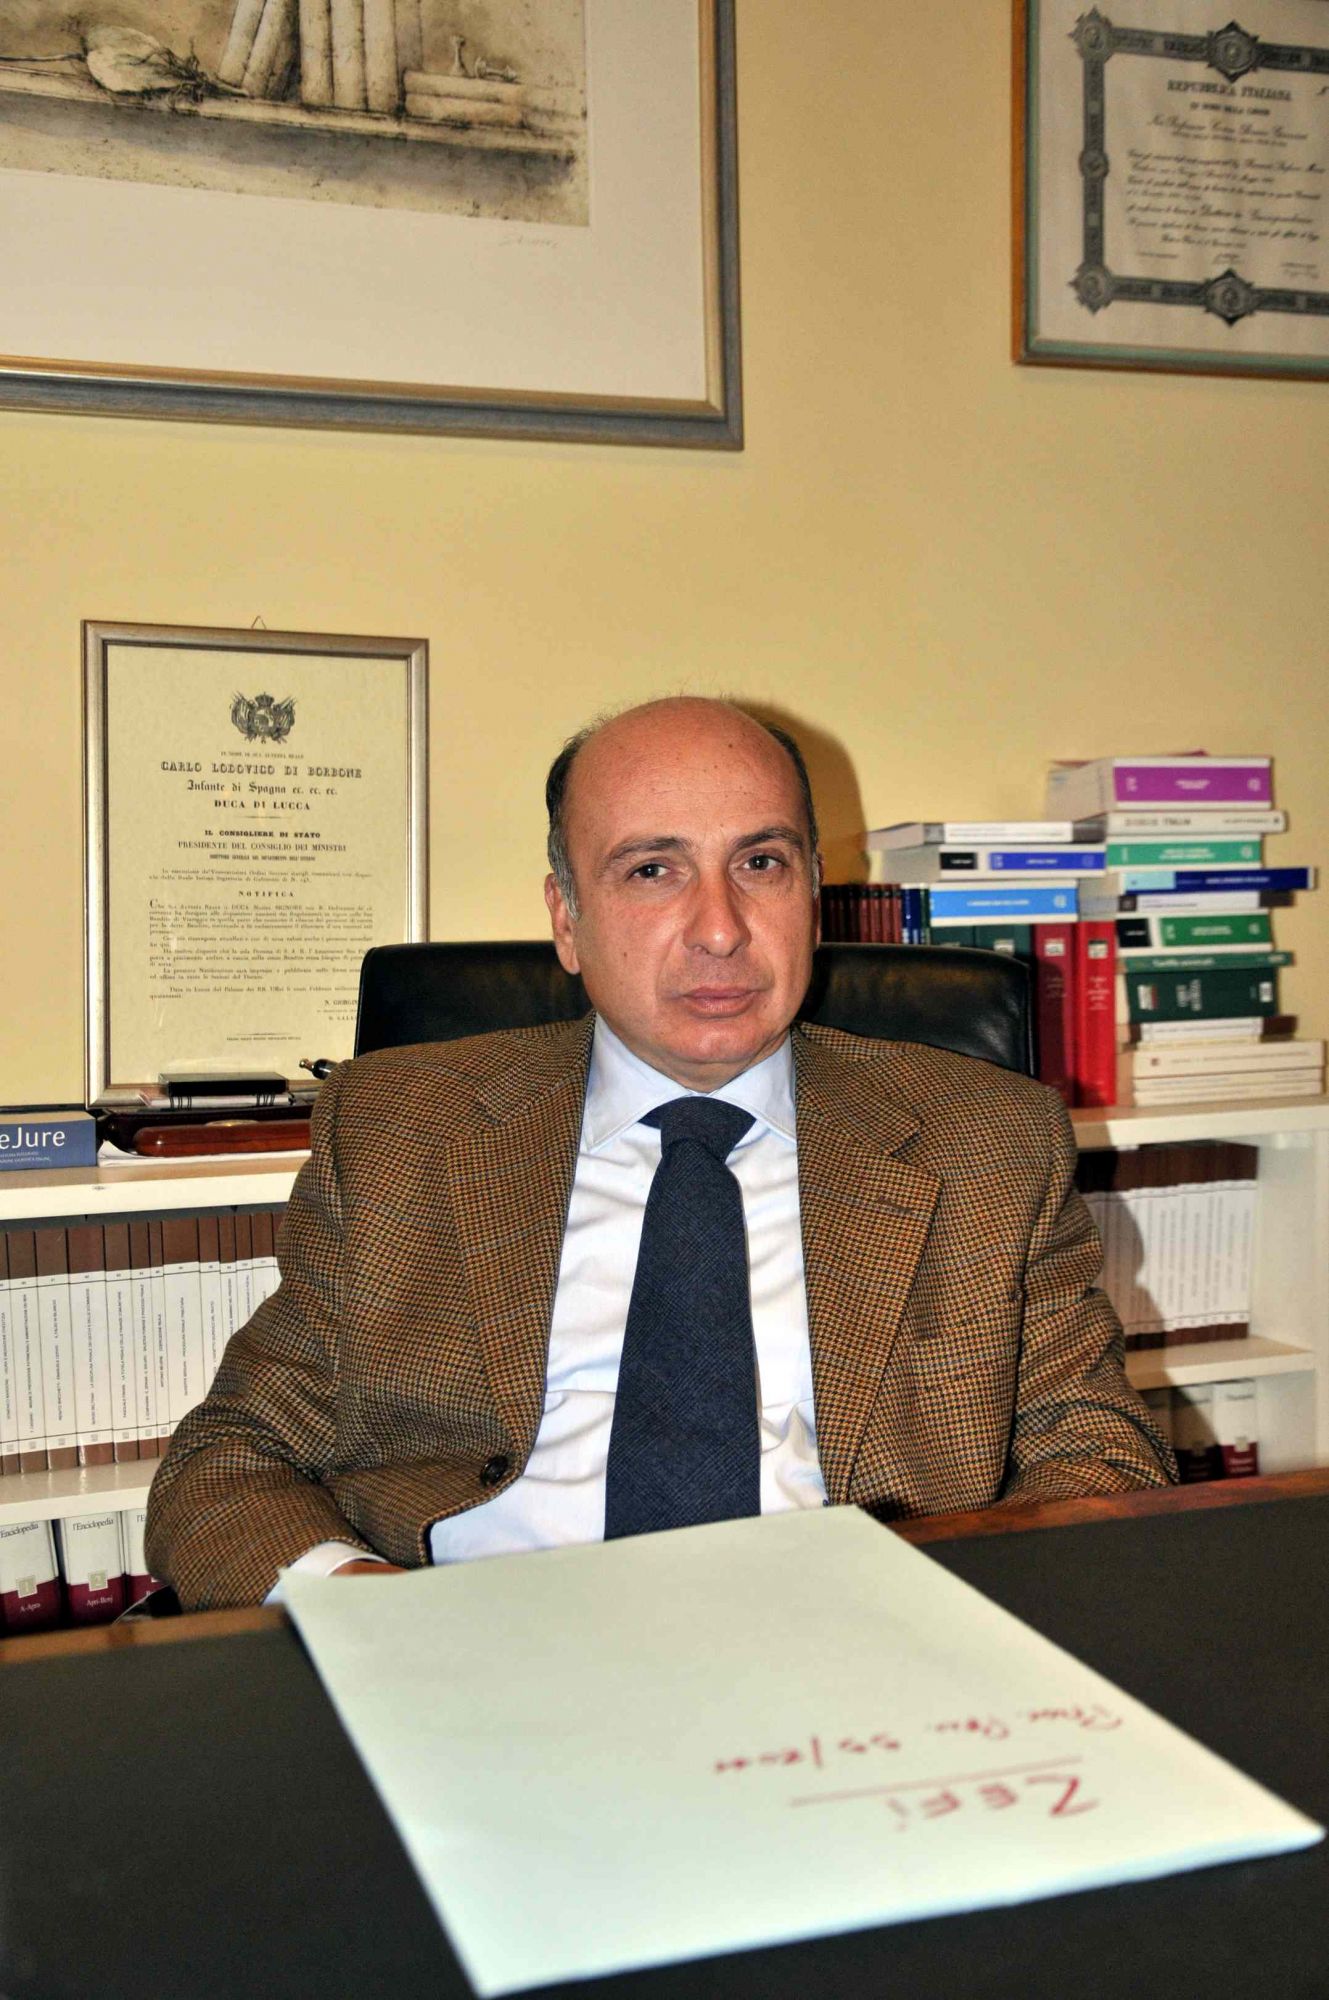 Strage di Viareggio, intervista all’avvocato Riccardo Carloni: “A questo processo abbiamo dato tutti noi stessi per pura sete di giustizia”